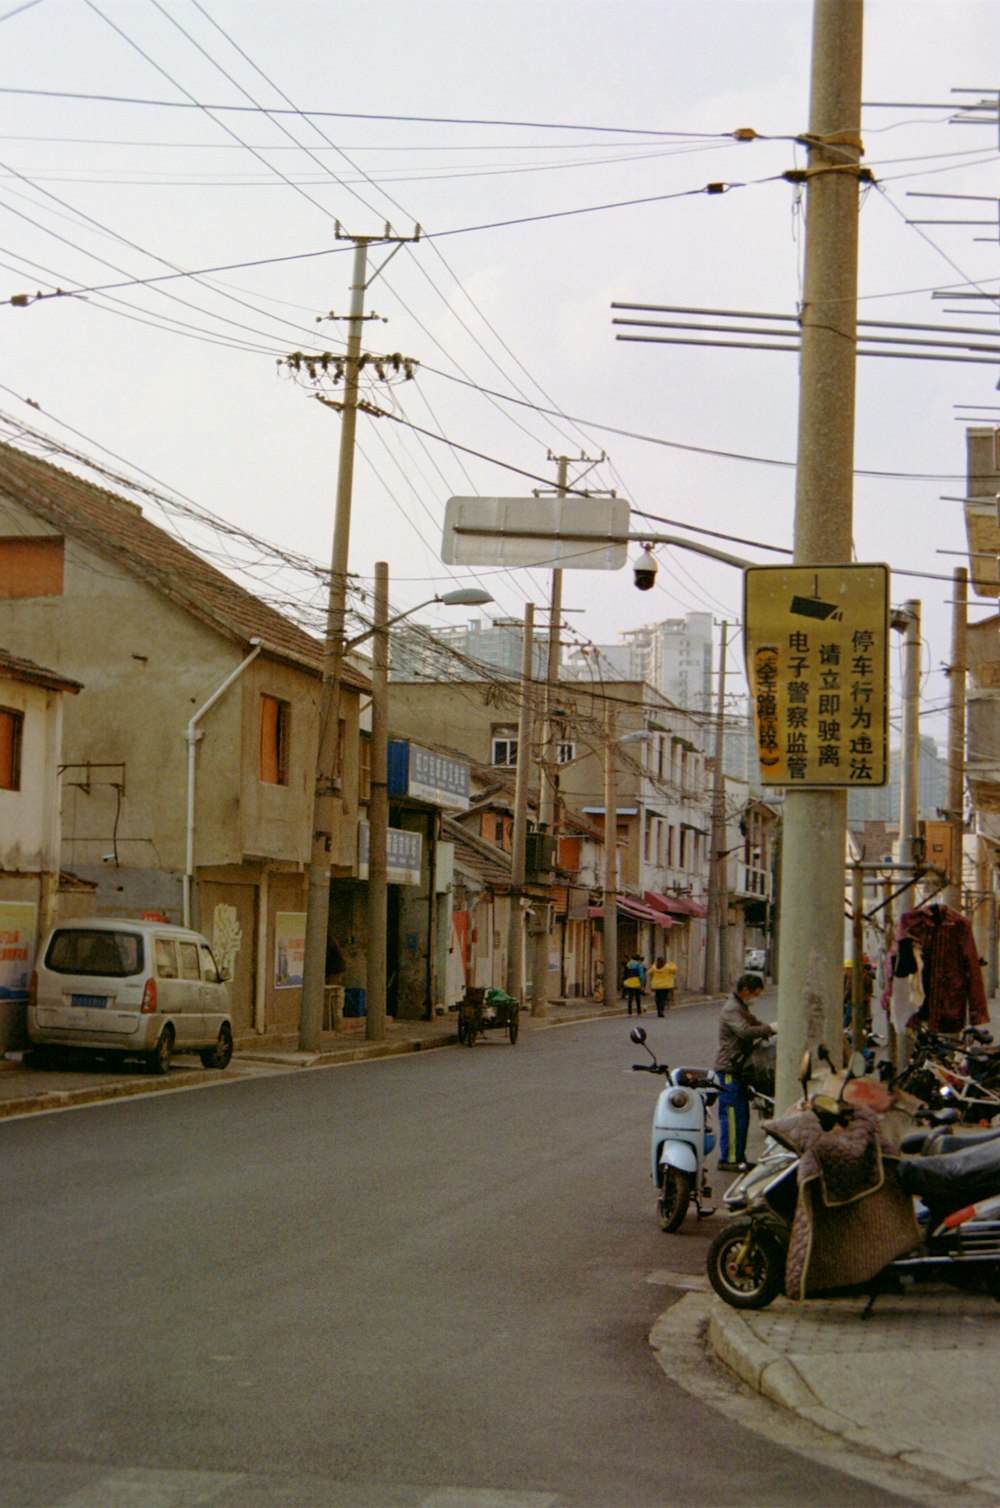 eine Straße mit einem Motorrad und einem Schild darauf